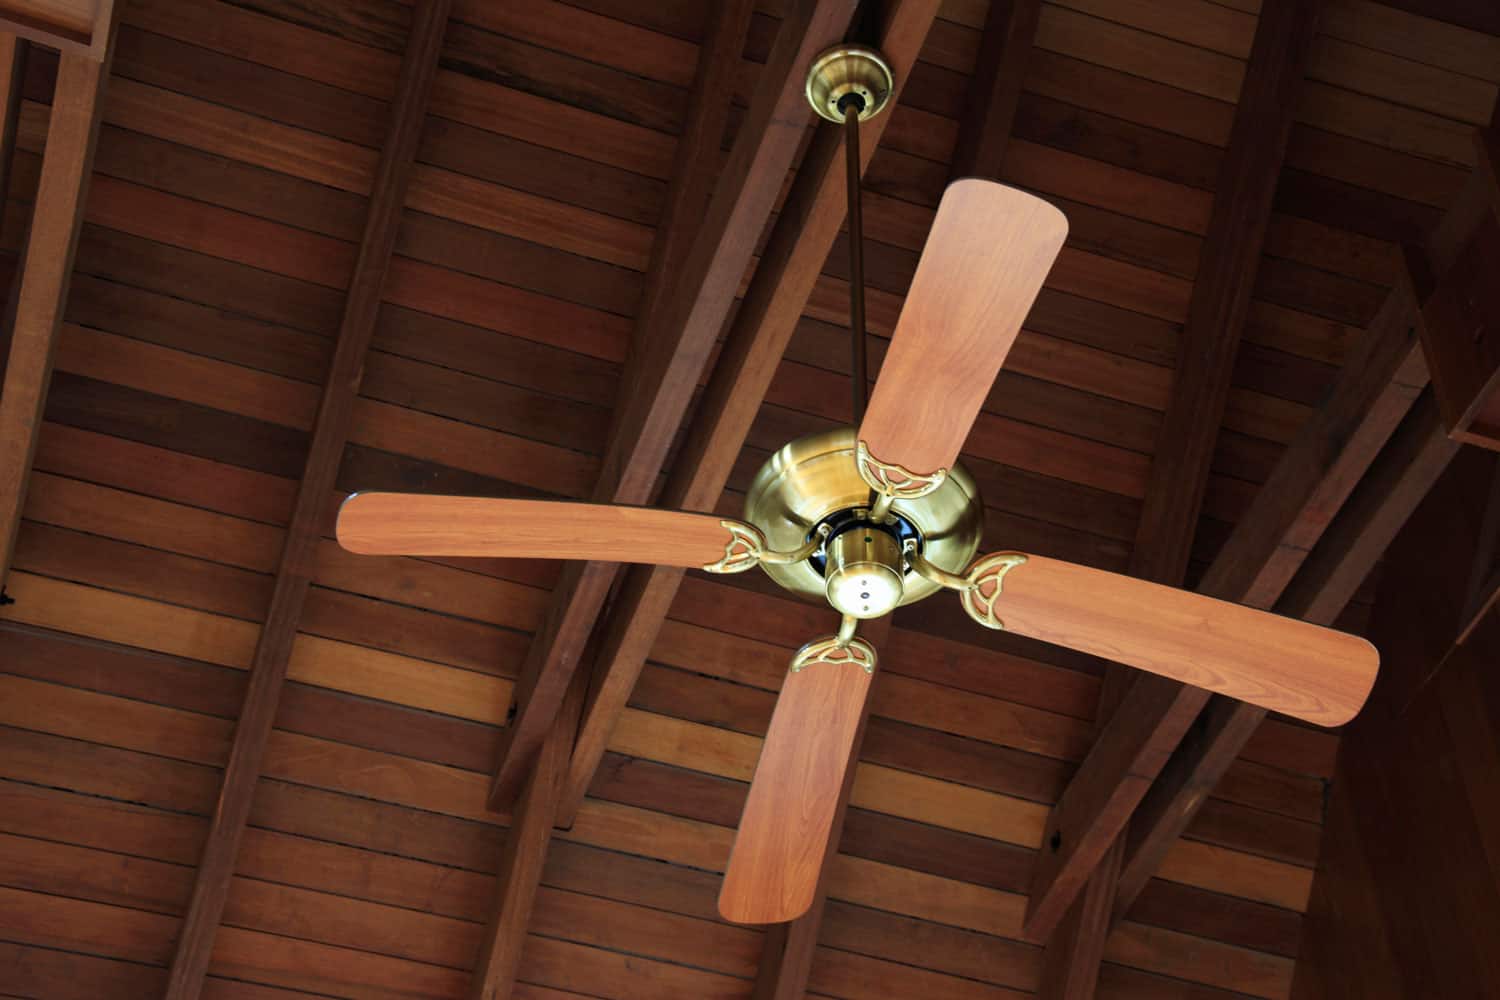 Modern wood type interior ceiling fan